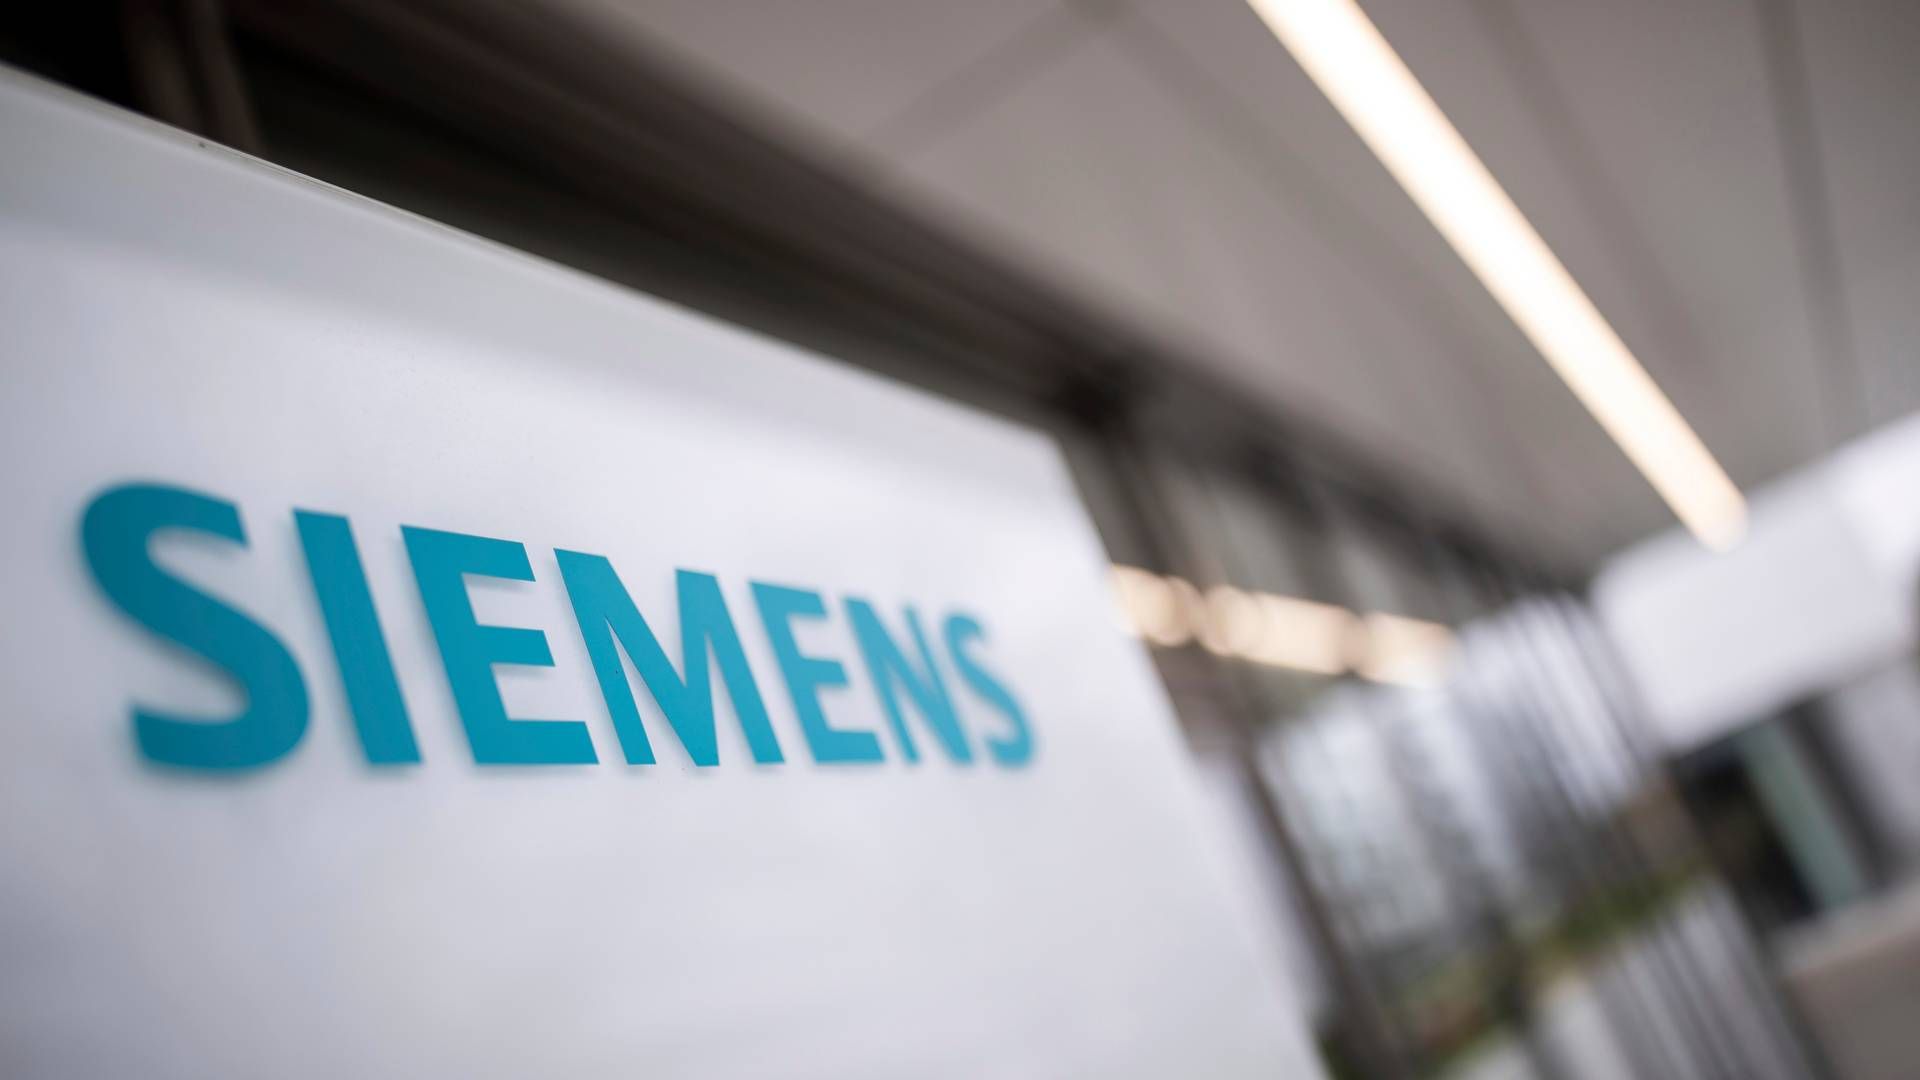 Siemens Mobility er bl.a. også i spil til et udbud om at levere 14 batteritog til Lokaltog.